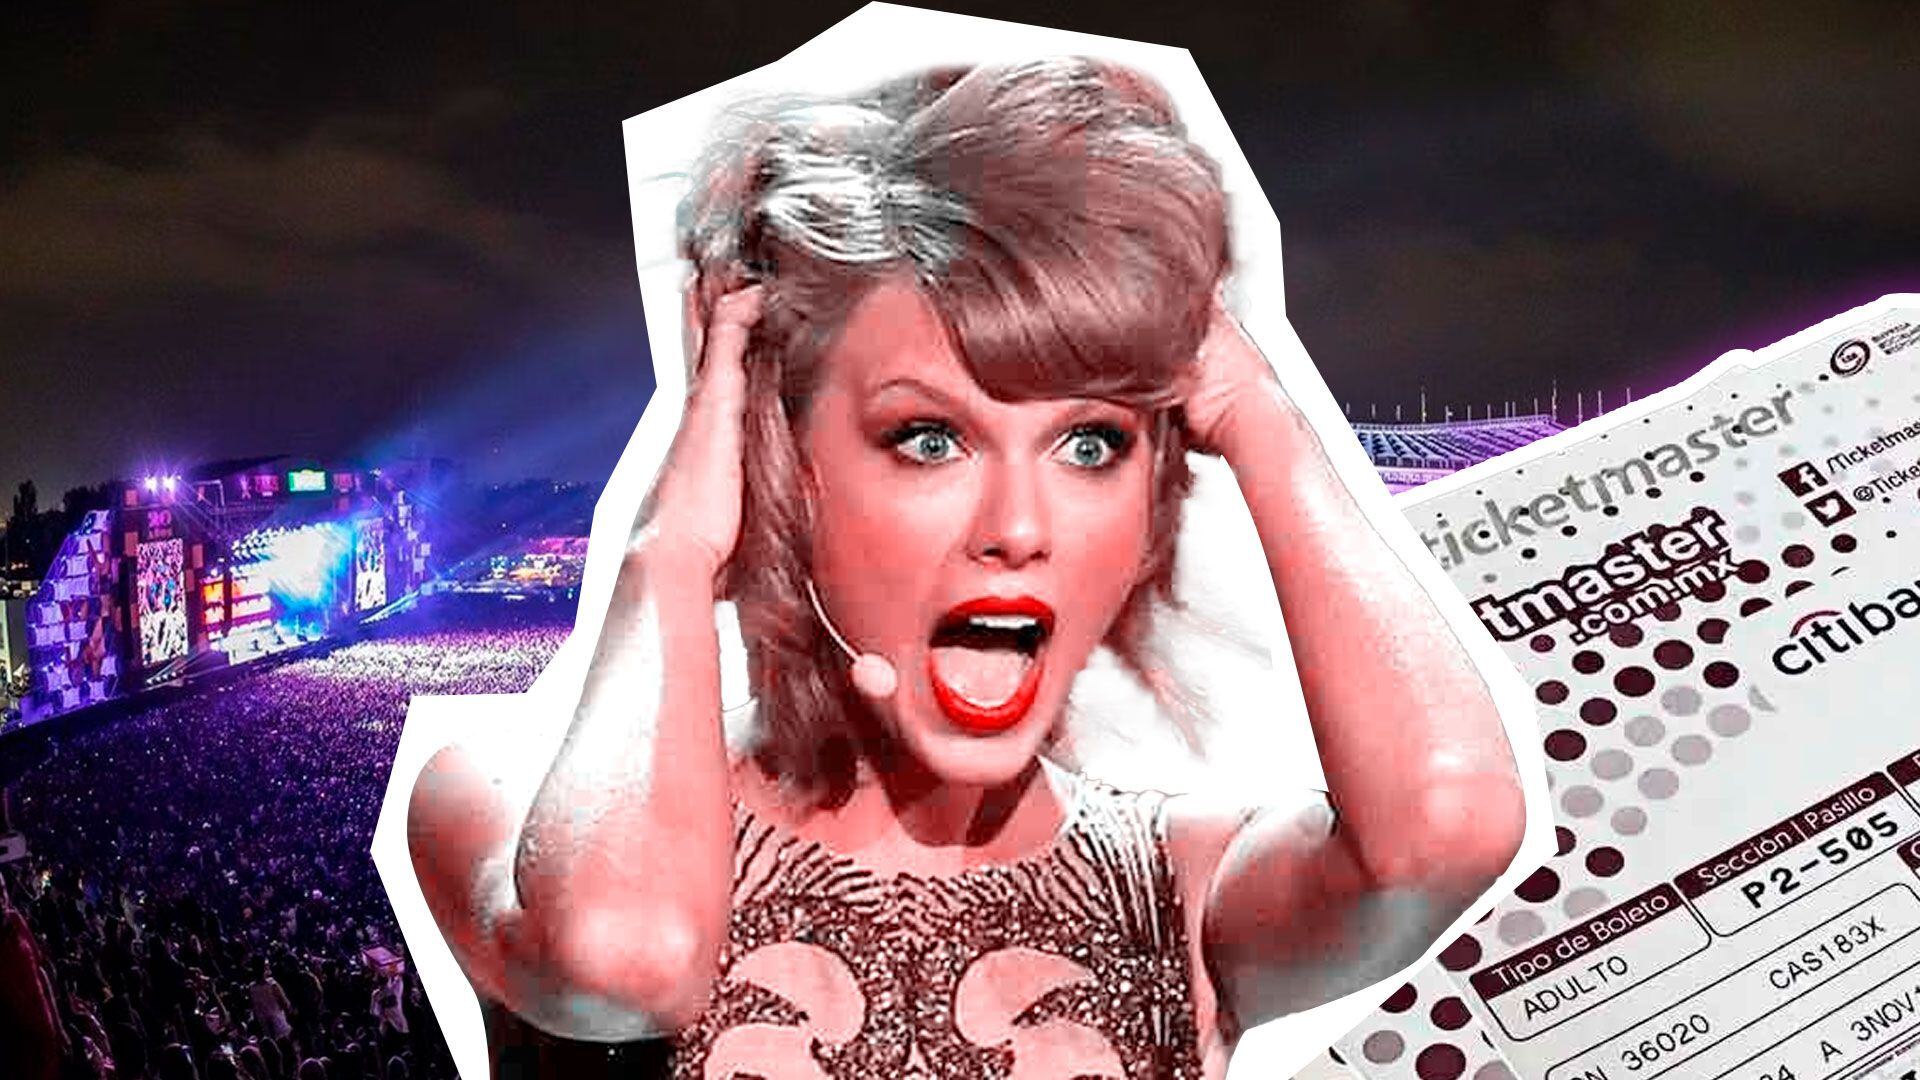 La espera de los fans por ver a Taylor Swift en CDMX se traduce en precios exorbitantes en la reventa de boletos